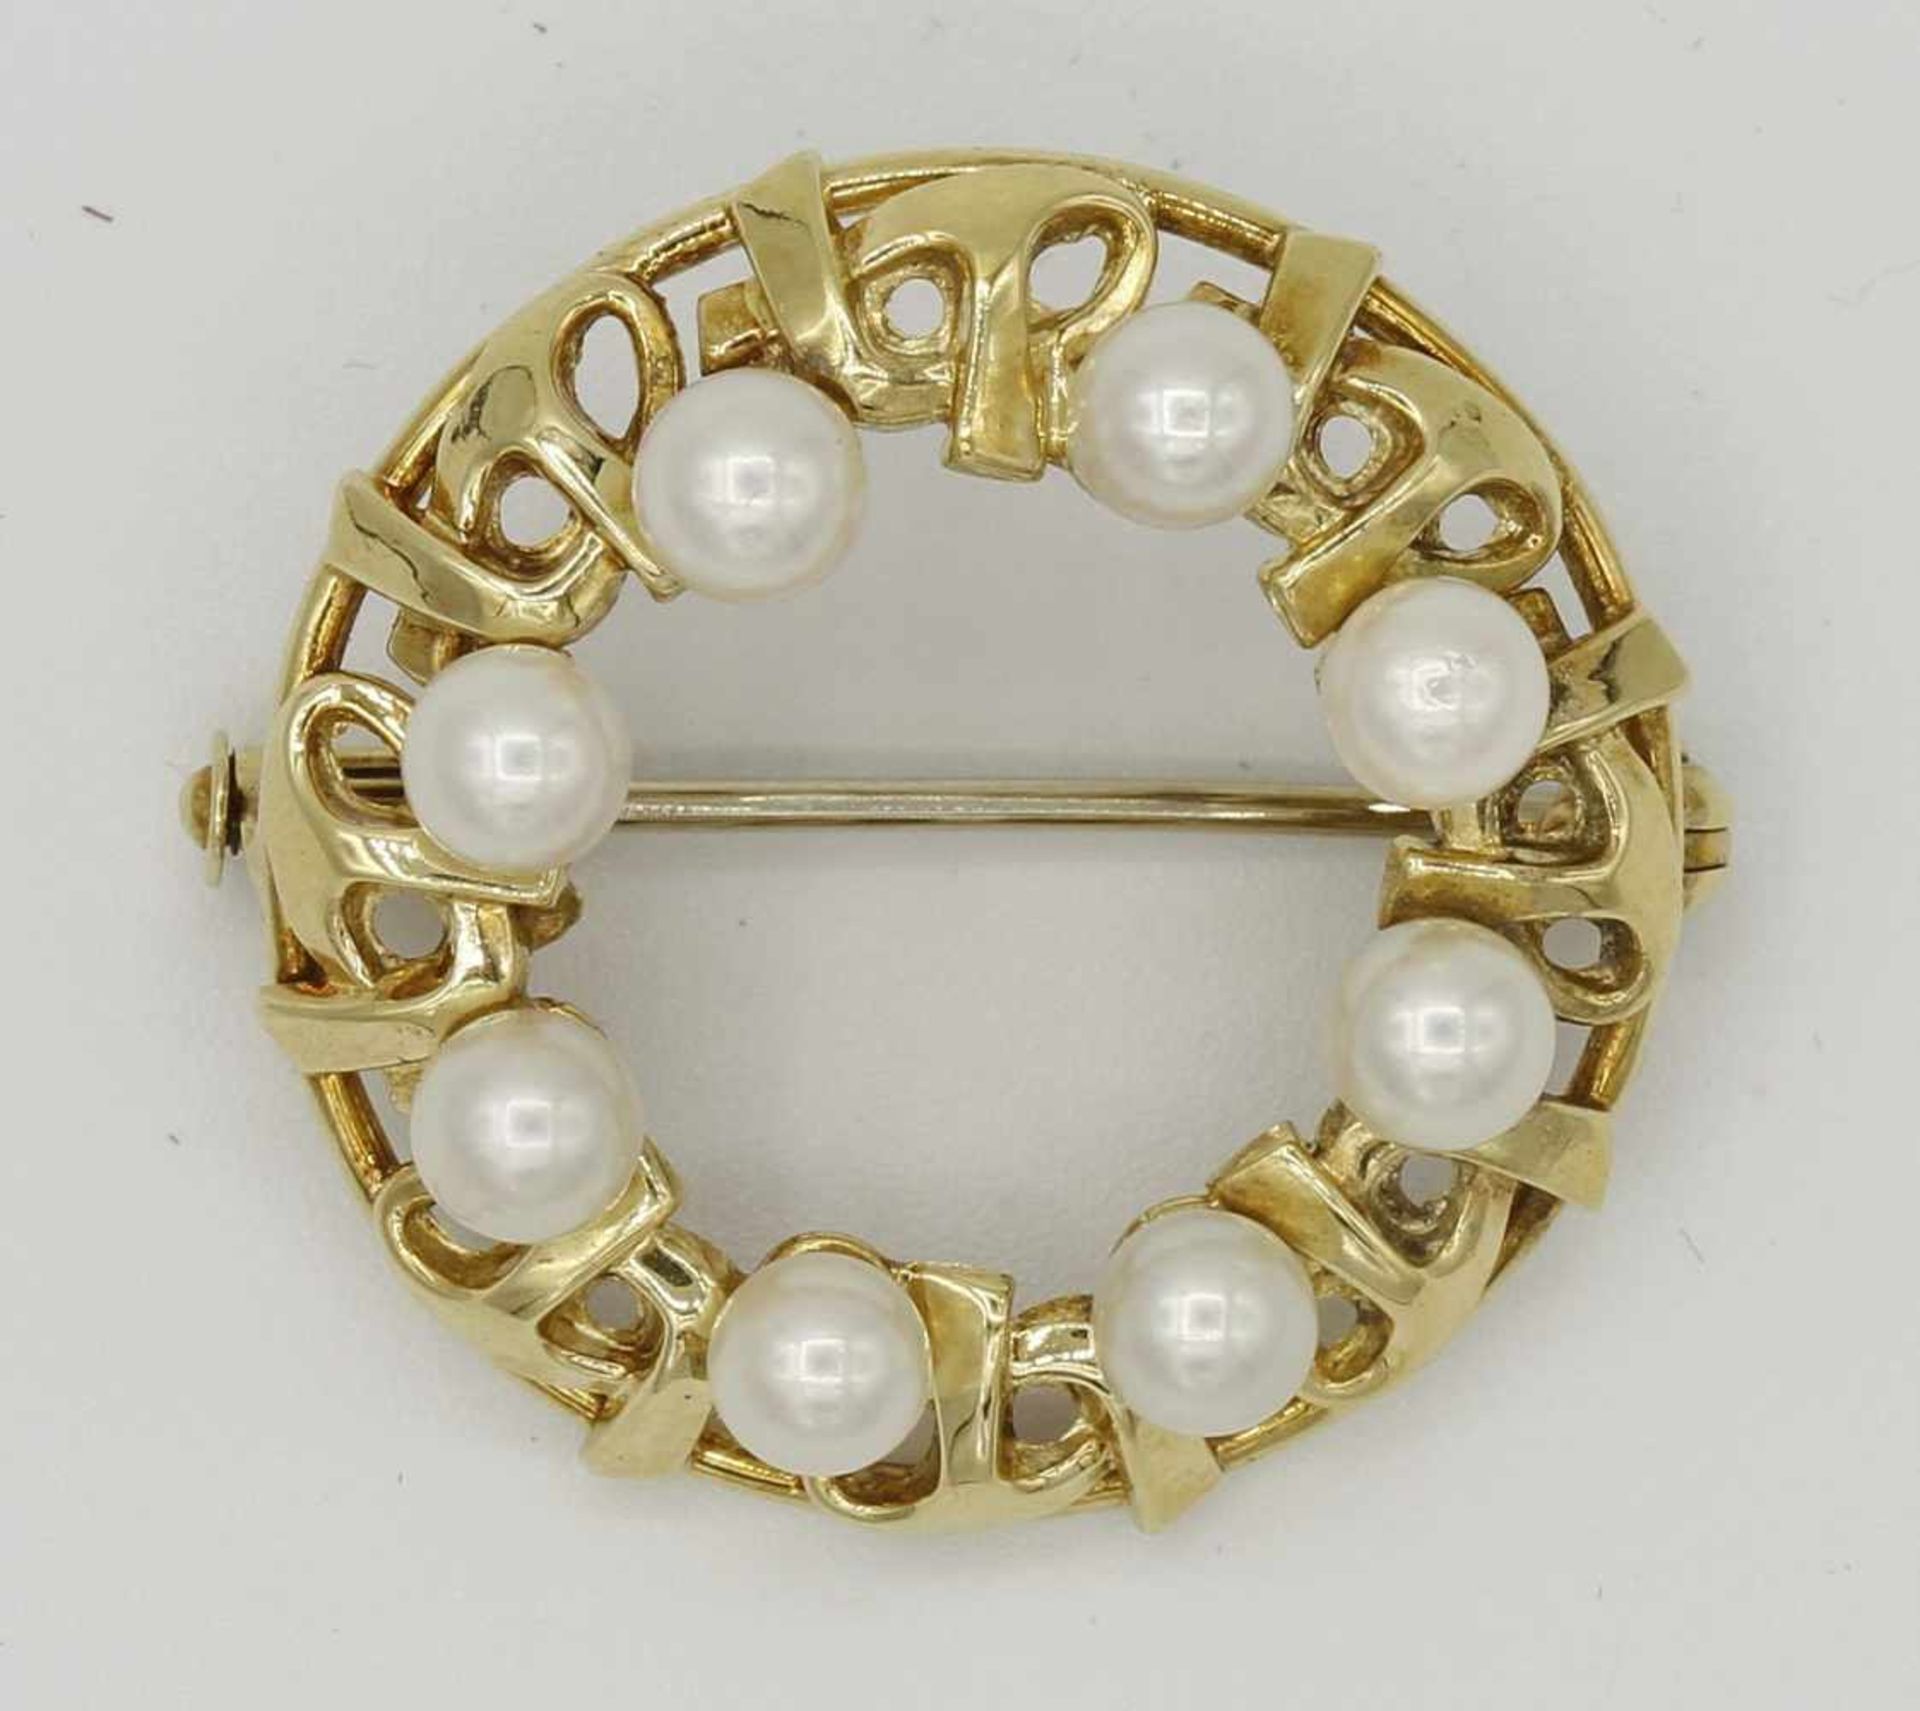 Runde Gold-Brosche mit Perlen585/- Gelbgold, acht aufgesetzte, runde Perle, modern, mit